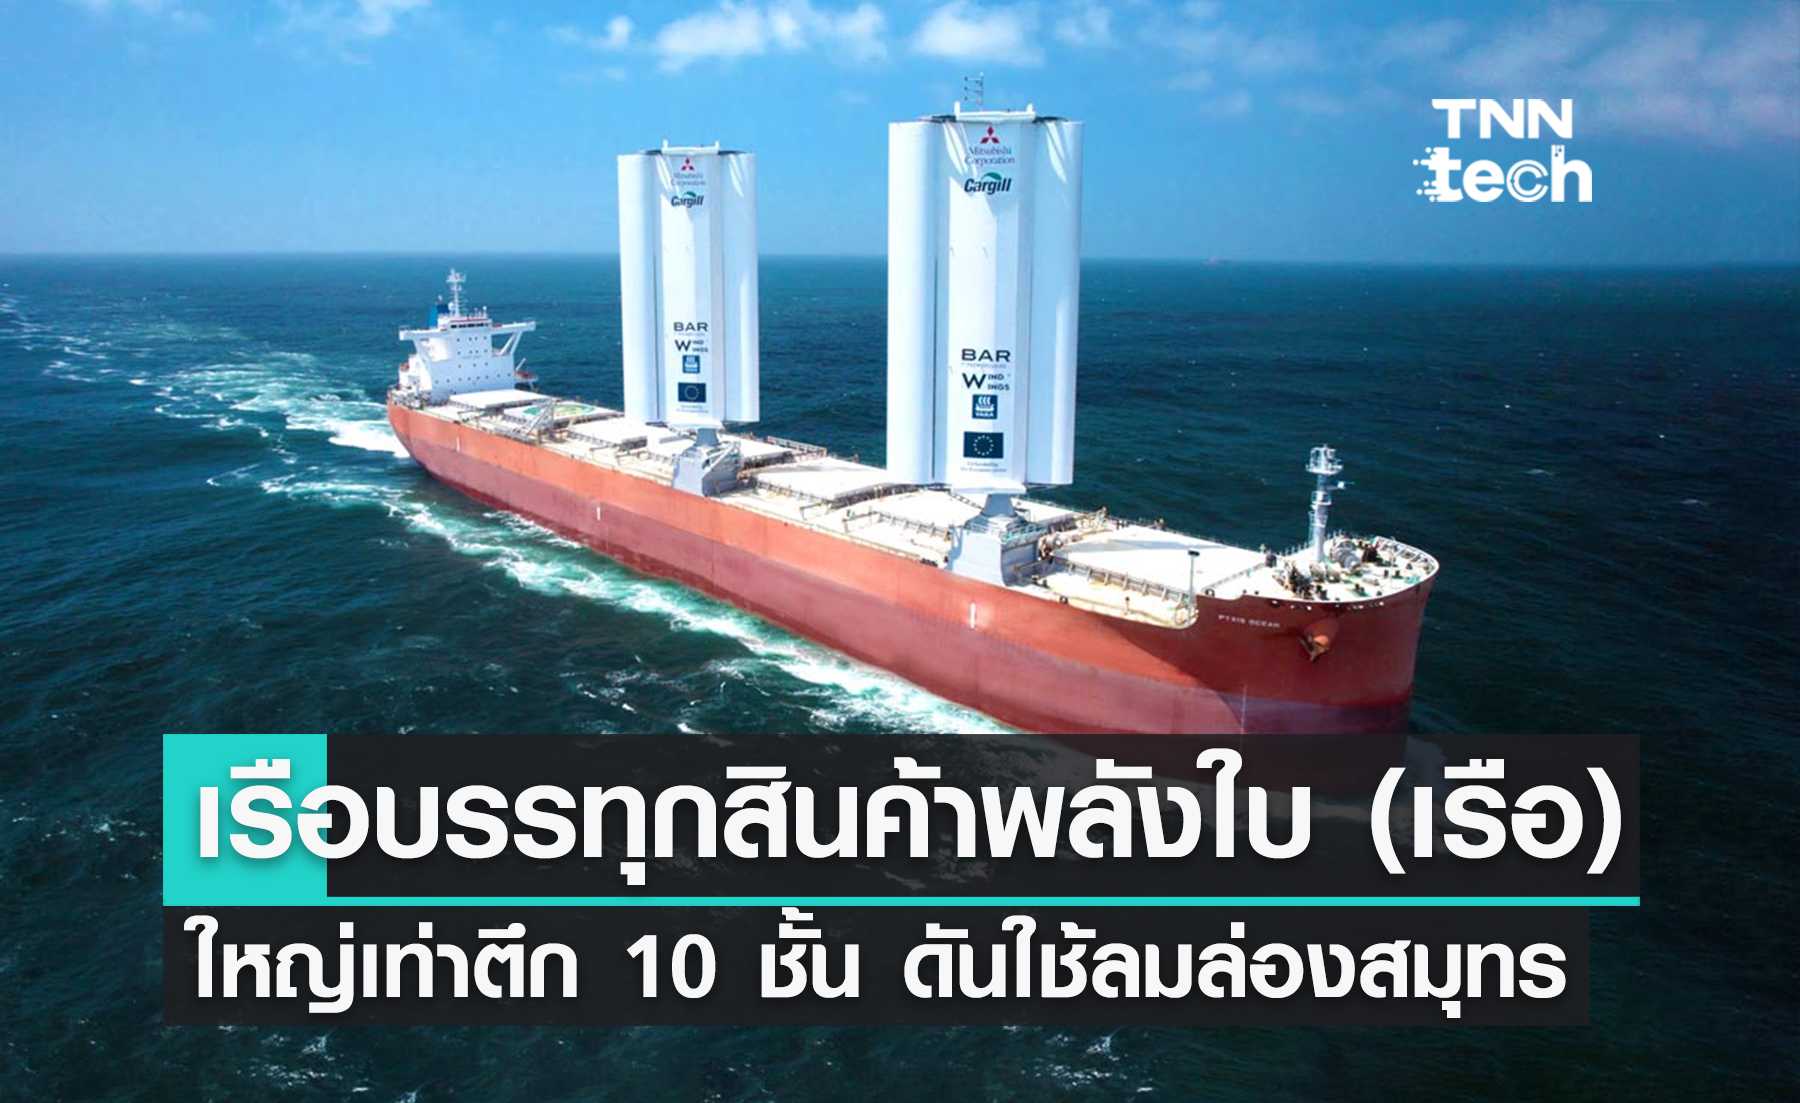 เริ่มแล้ว ! “Pyxis Ocean” เรือบรรทุกสินค้าพลังใบ (เรือ) ใหญ่เท่าตึก 10 ชั้น ดันกลับมาใช้พลังงานลมล่องเรือ